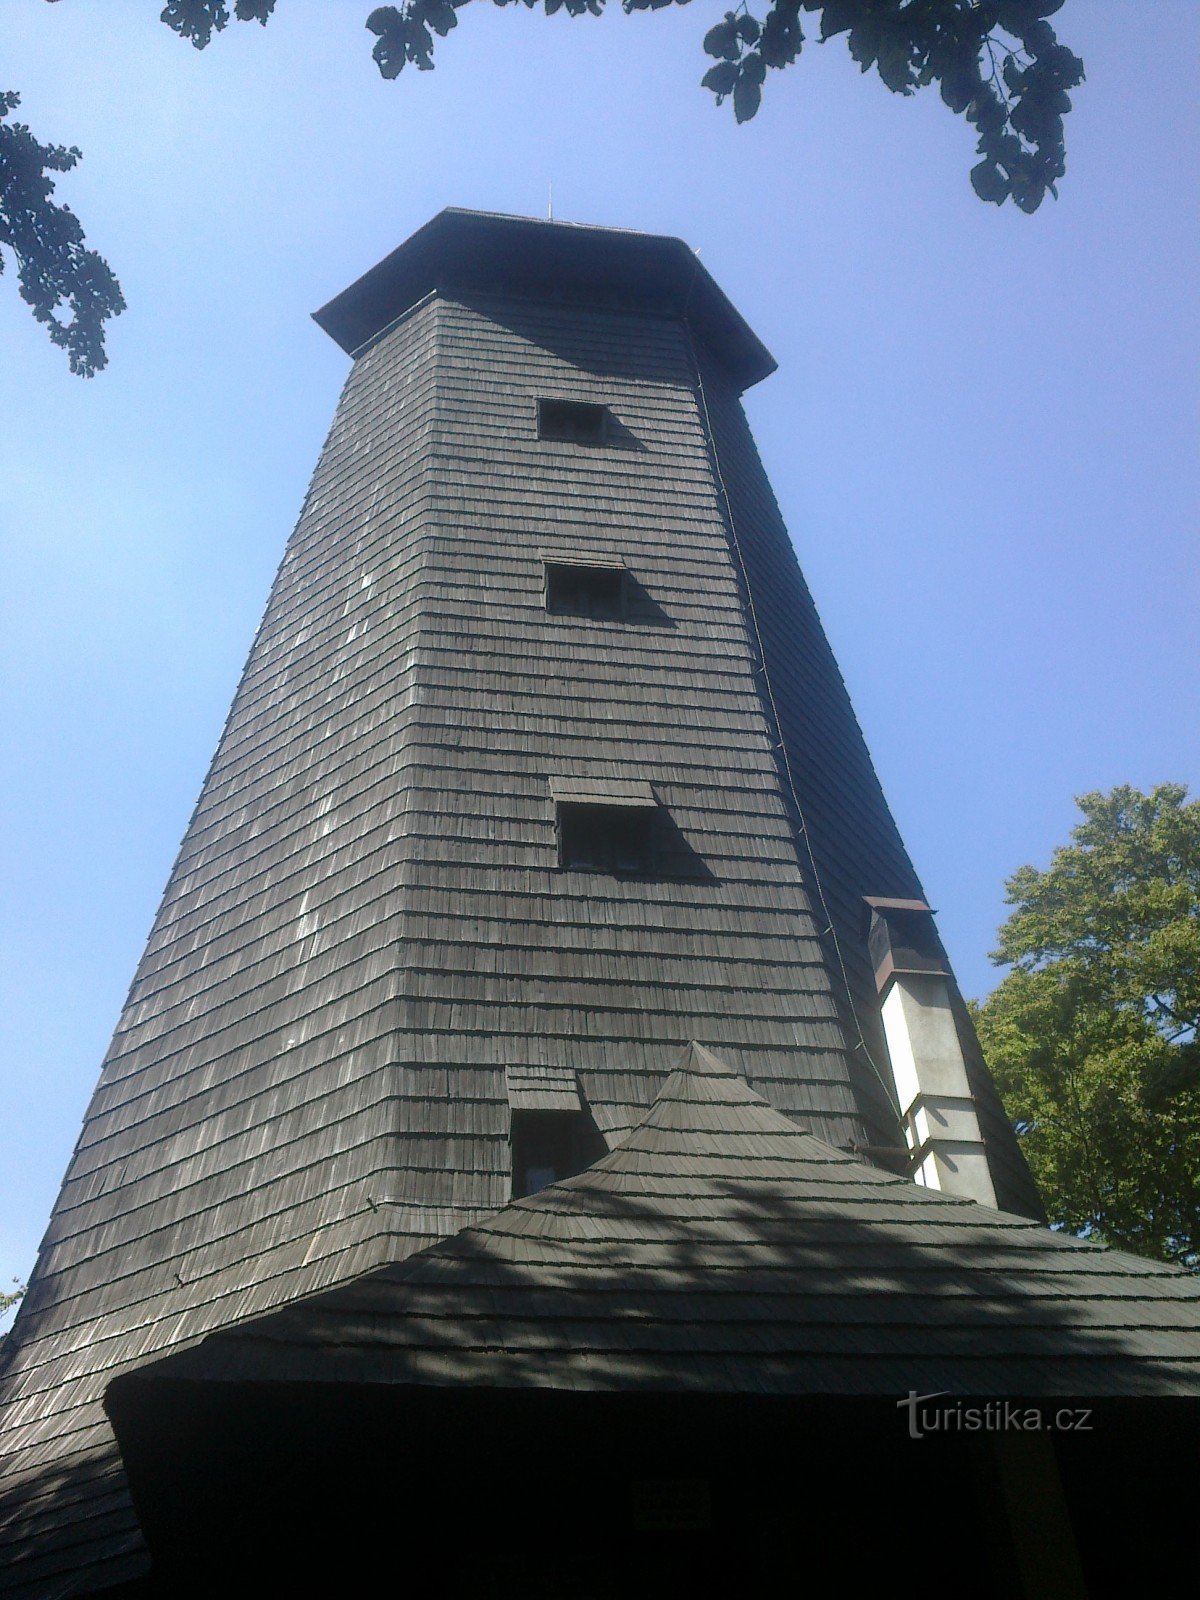 lookout tower on Velky Blaník.